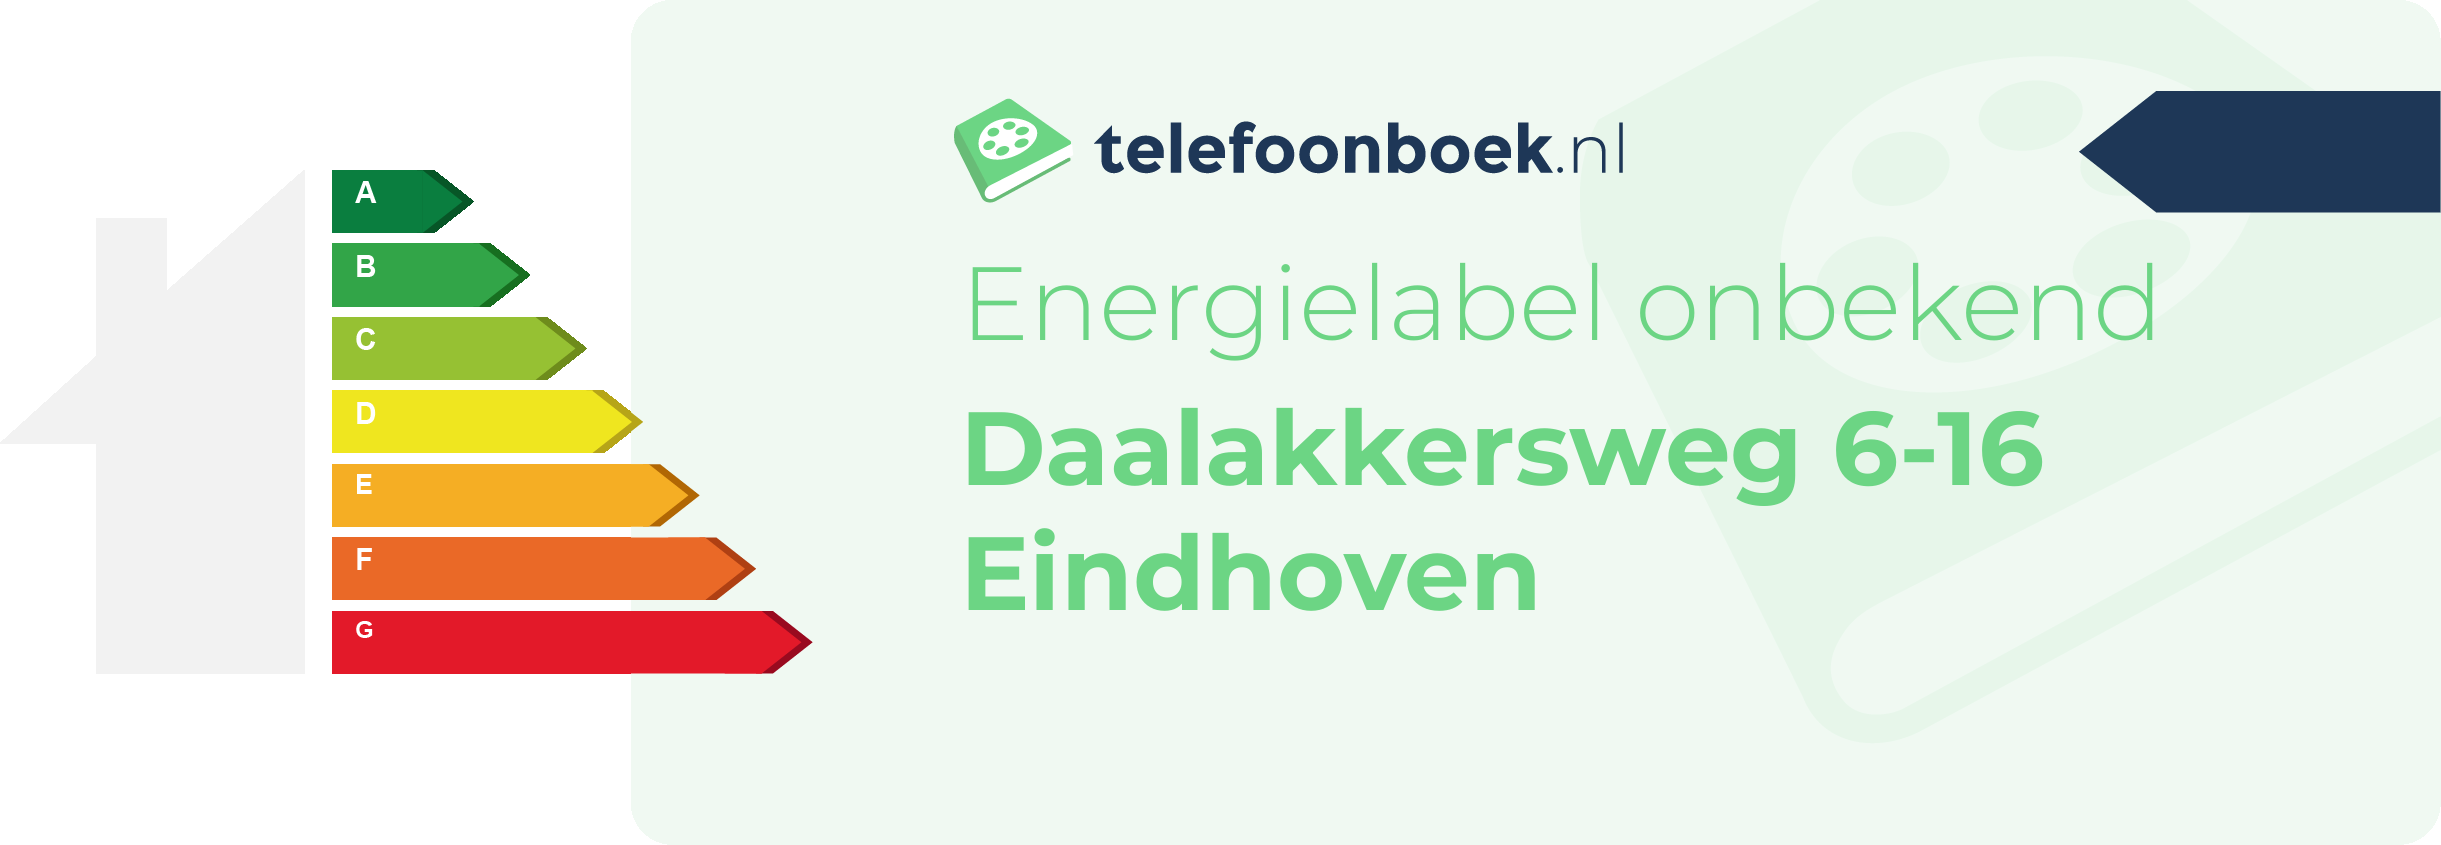 Energielabel Daalakkersweg 6-16 Eindhoven